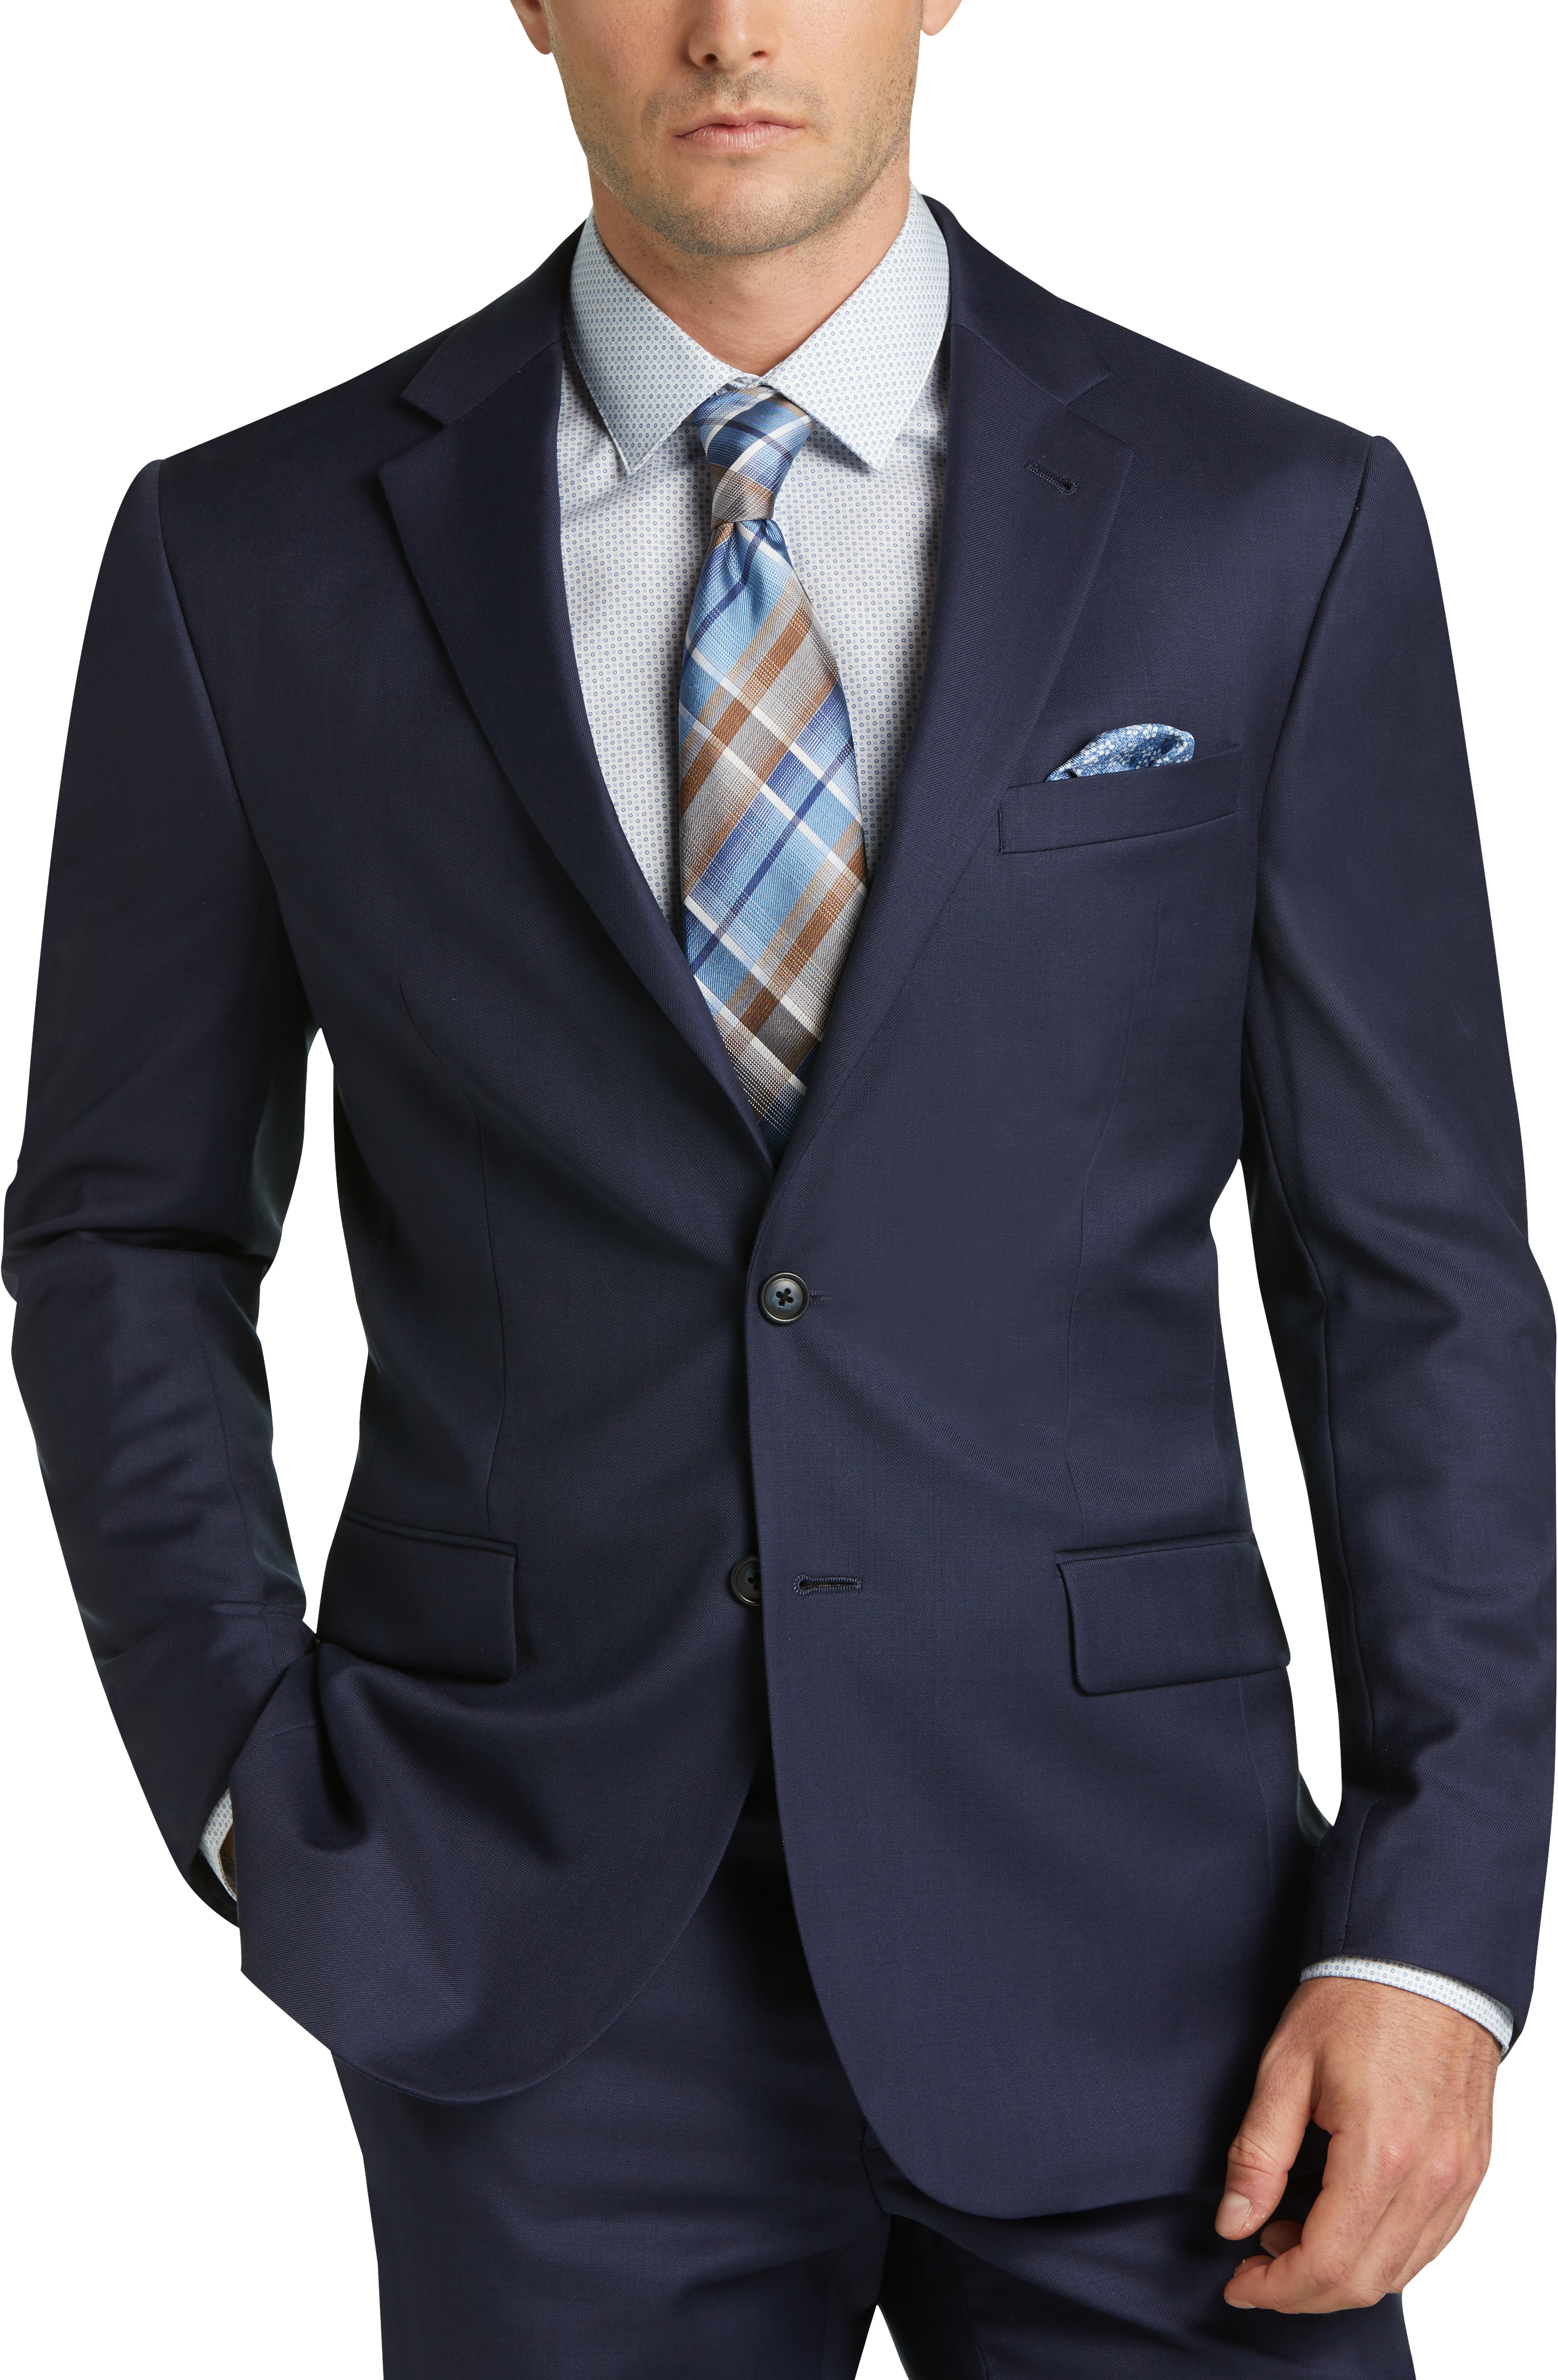 JOE Joseph Abboud Blue Slim Fit Suit Separates Coat - Men's Suits | Men ...